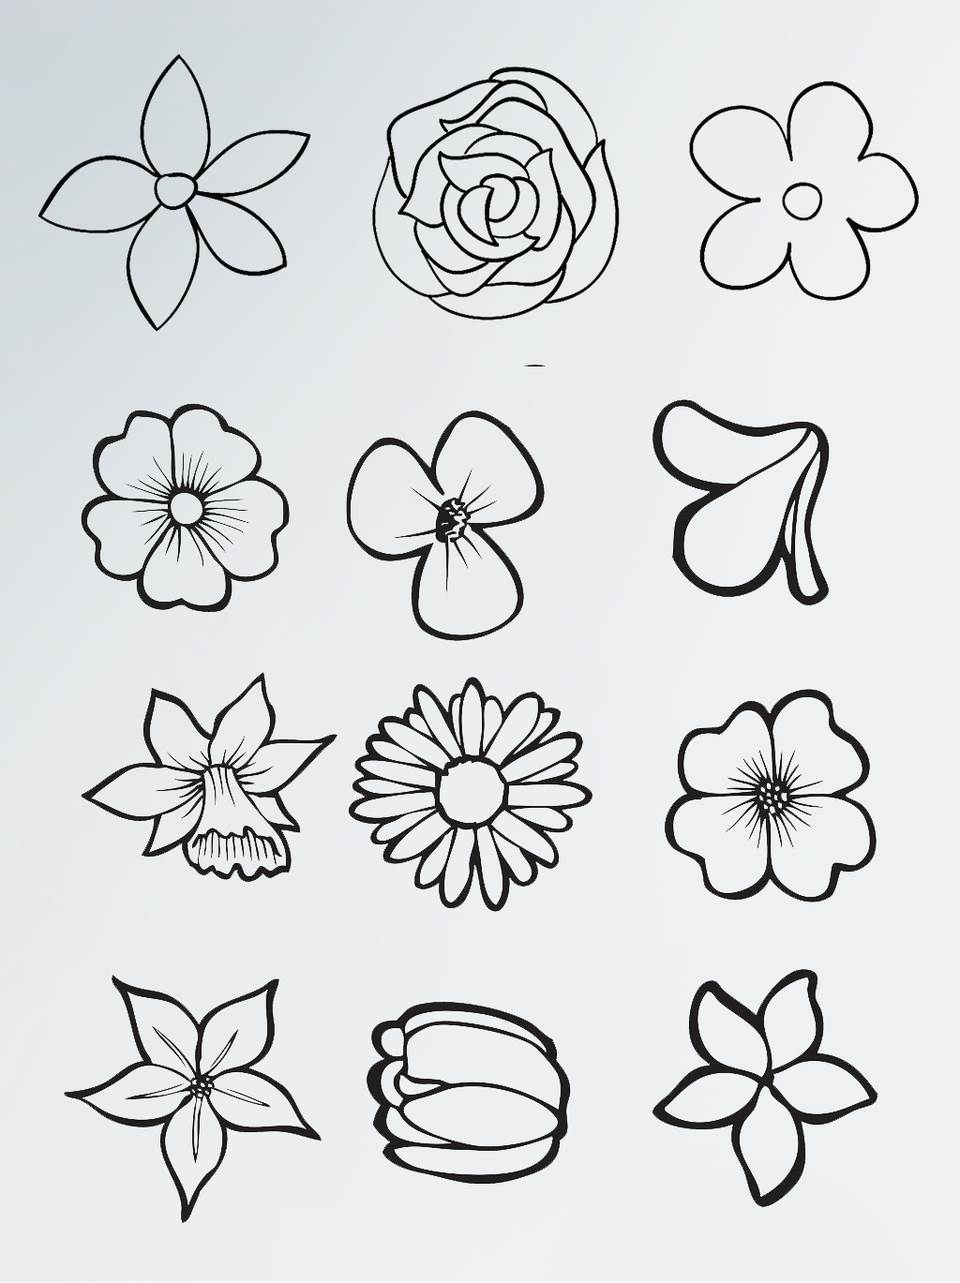 复杂简笔画花卉图片